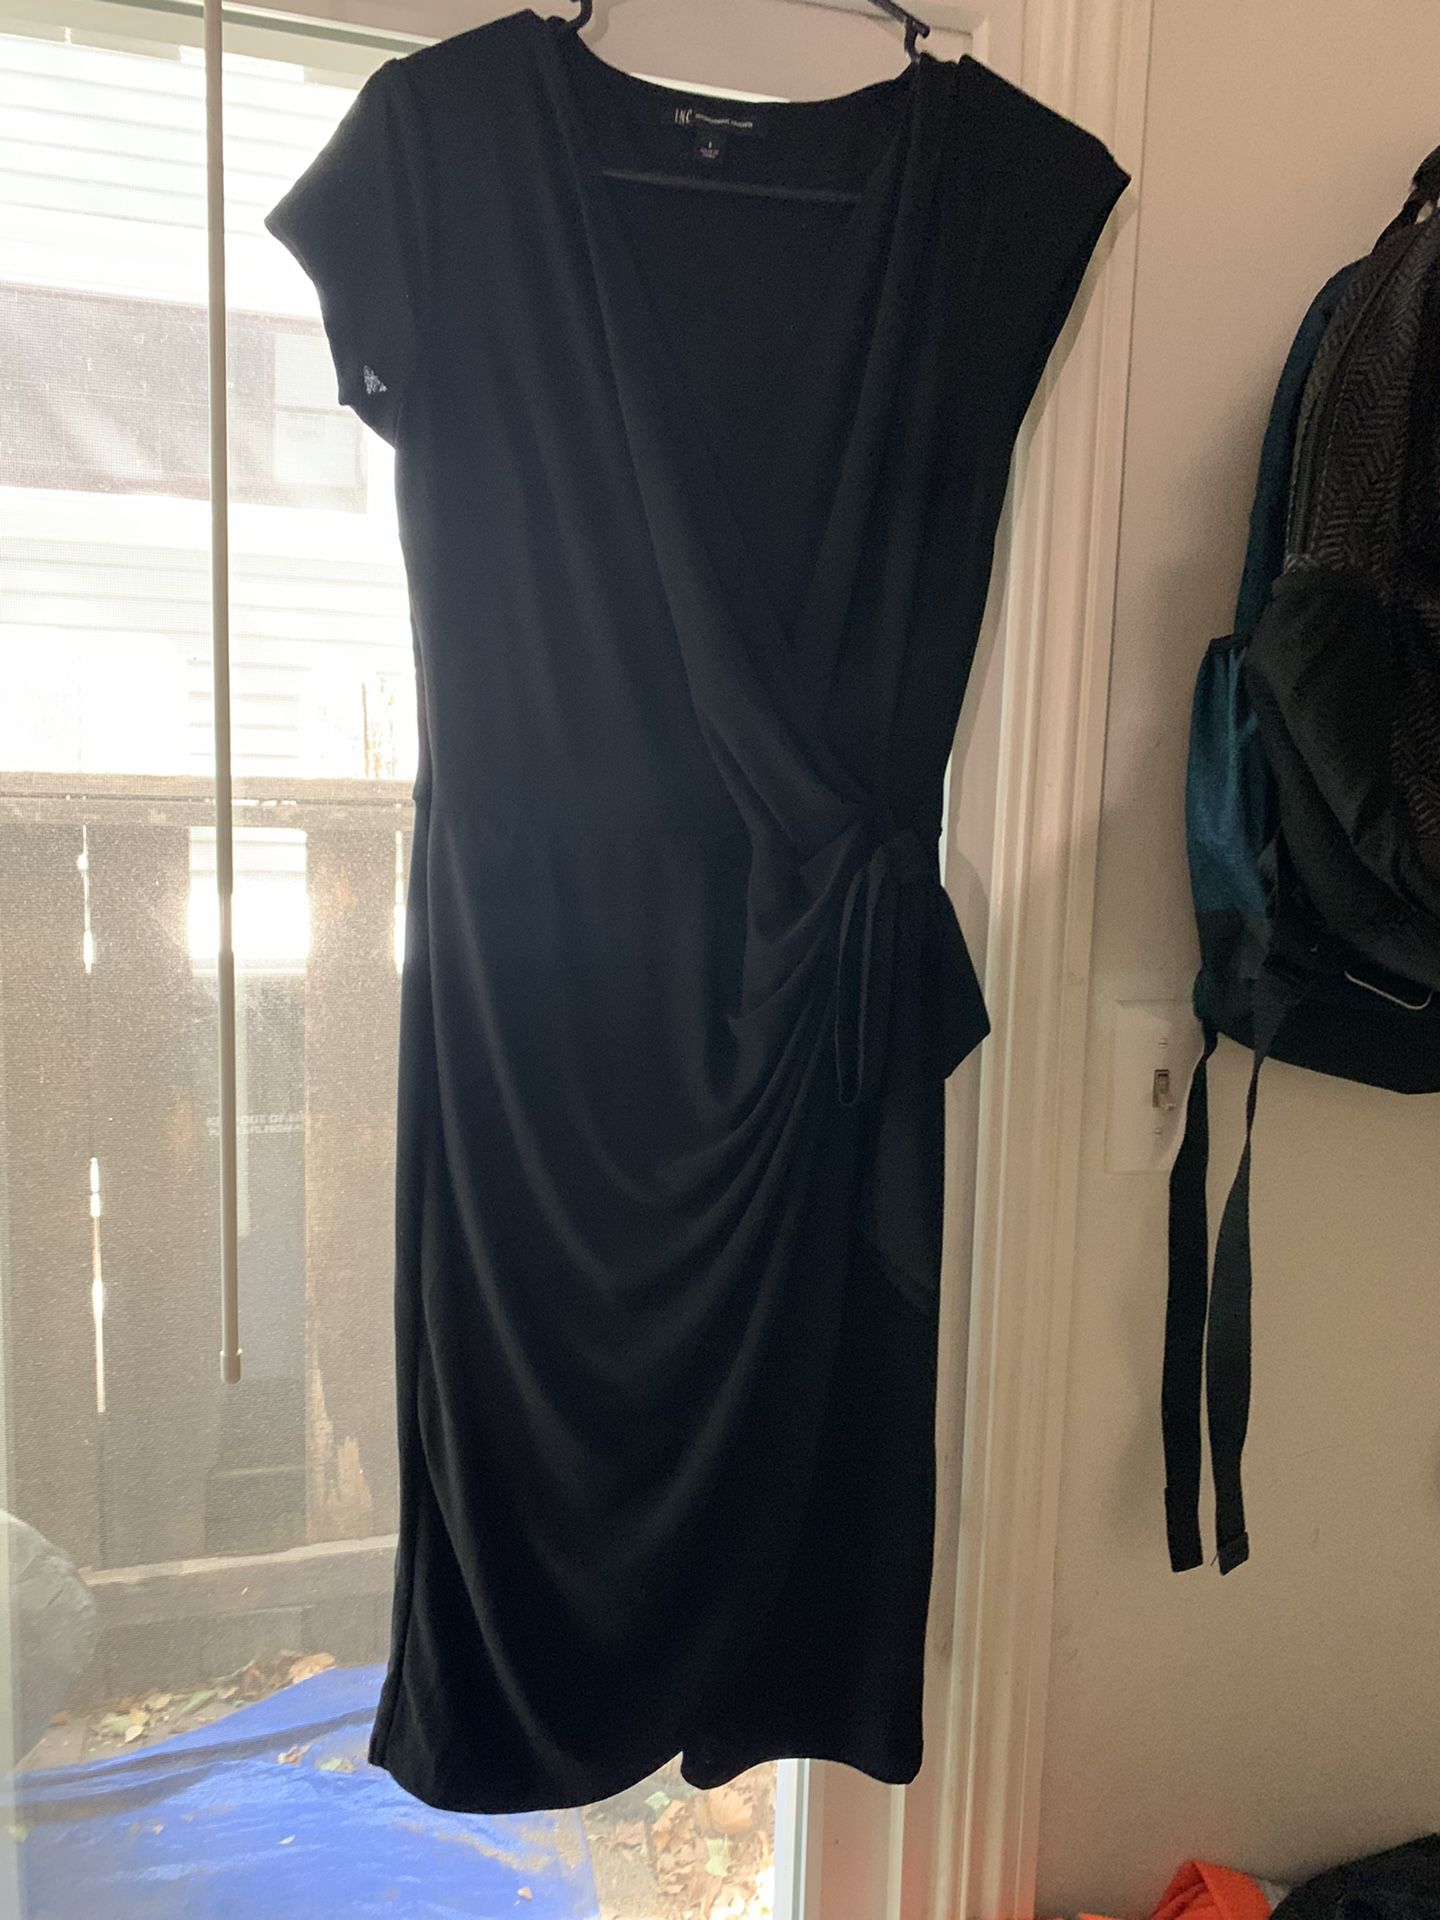 NEW Black Dress